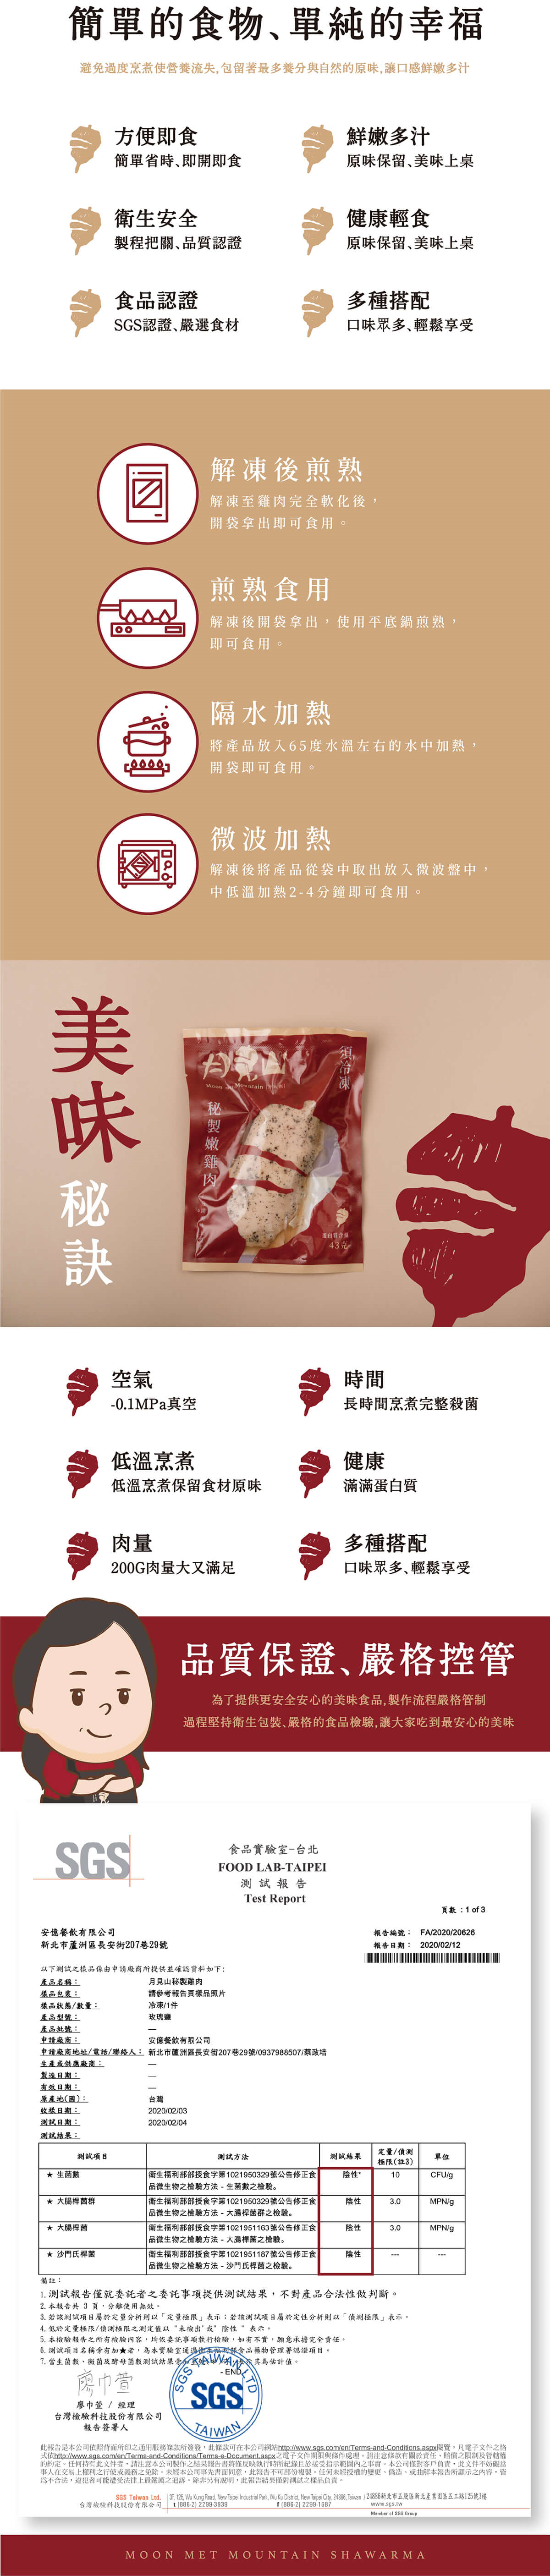 月見山秘製舒肥雞胸肉(200g) 健身運動食材/高蛋白輕食/雞肉/產地台灣